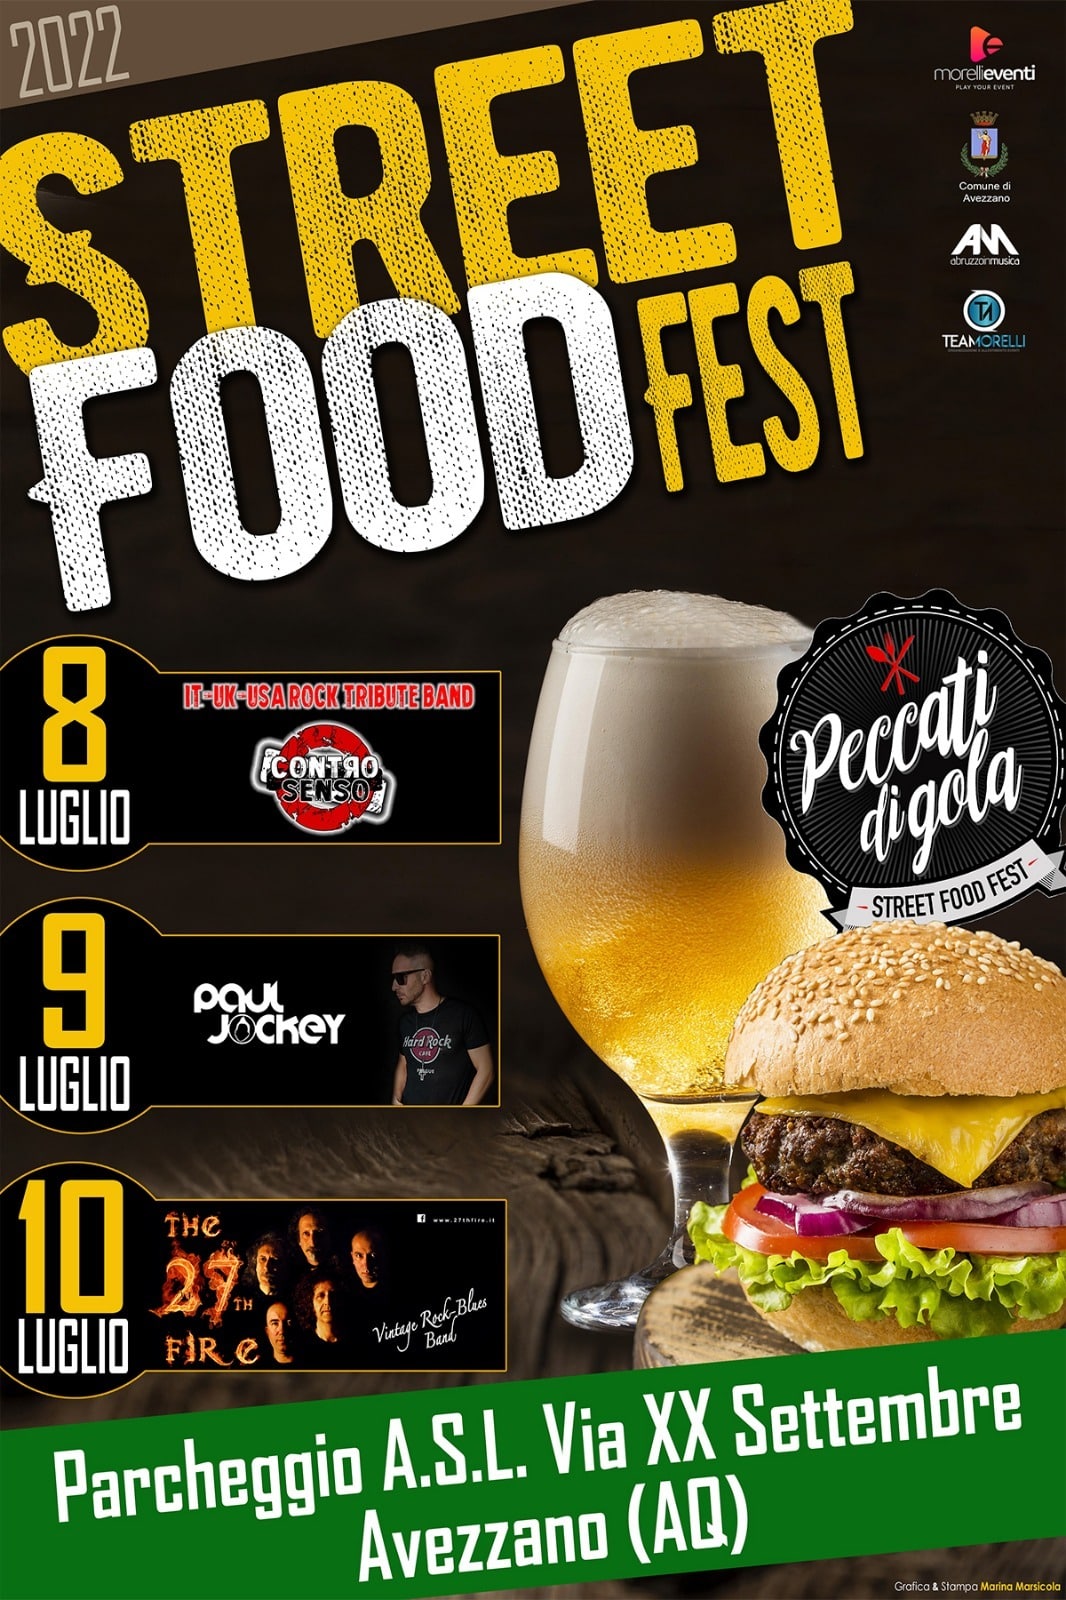 Gli eventi in programma per "Peccati di Gola Street Food Fest", dall'8 al 10 luglio ad Avezzano